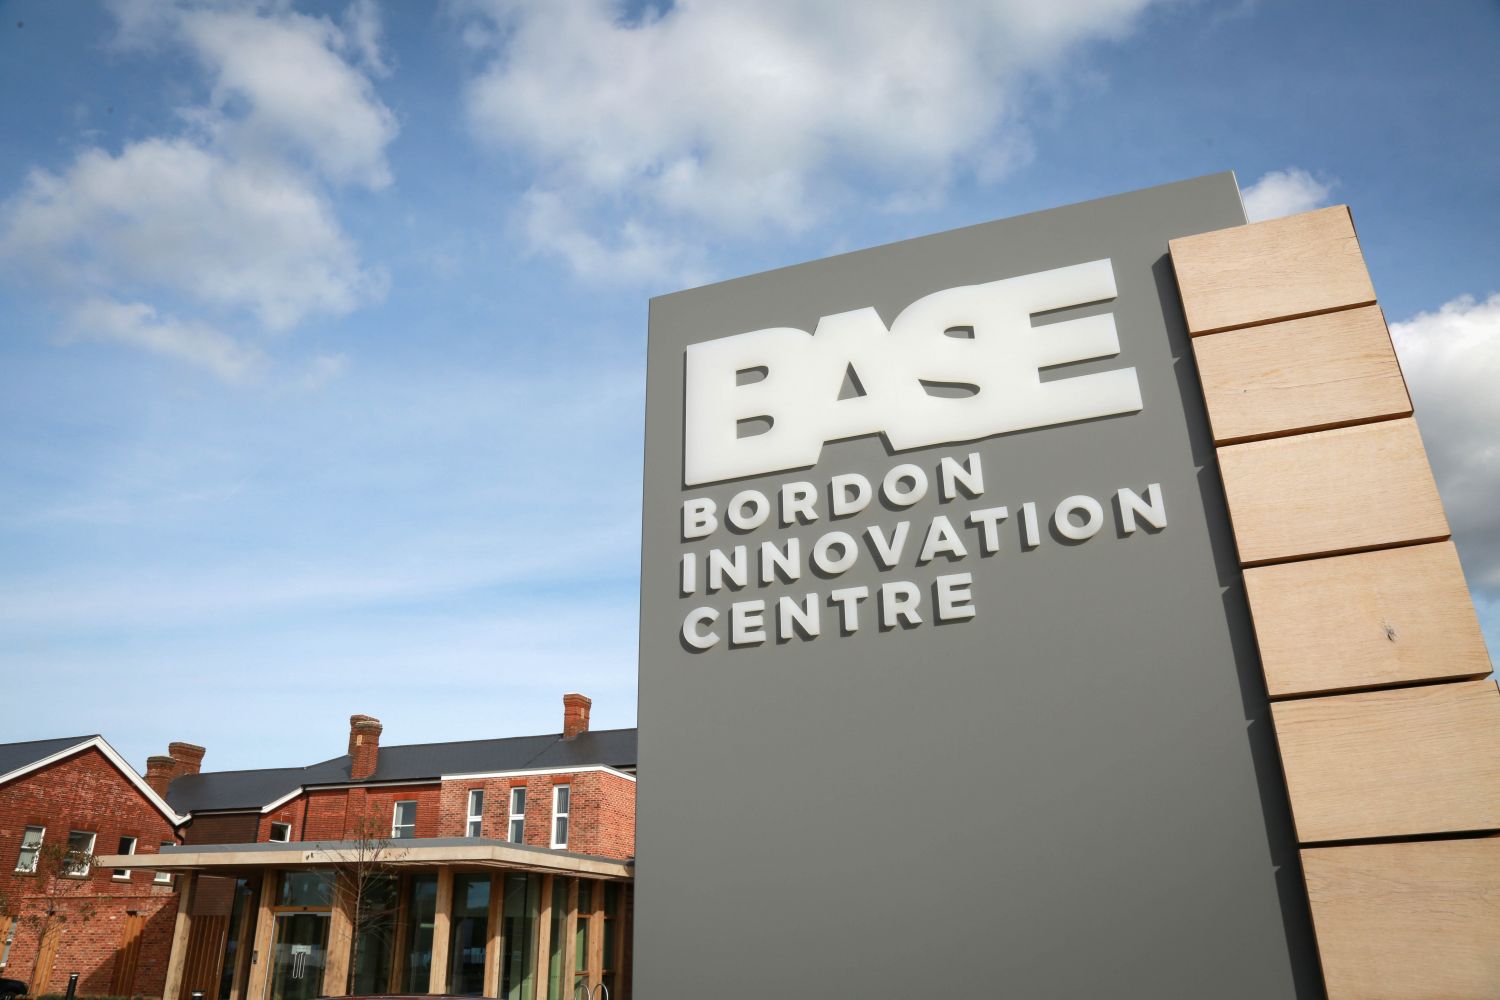 BASE Bordon Innovation Centre